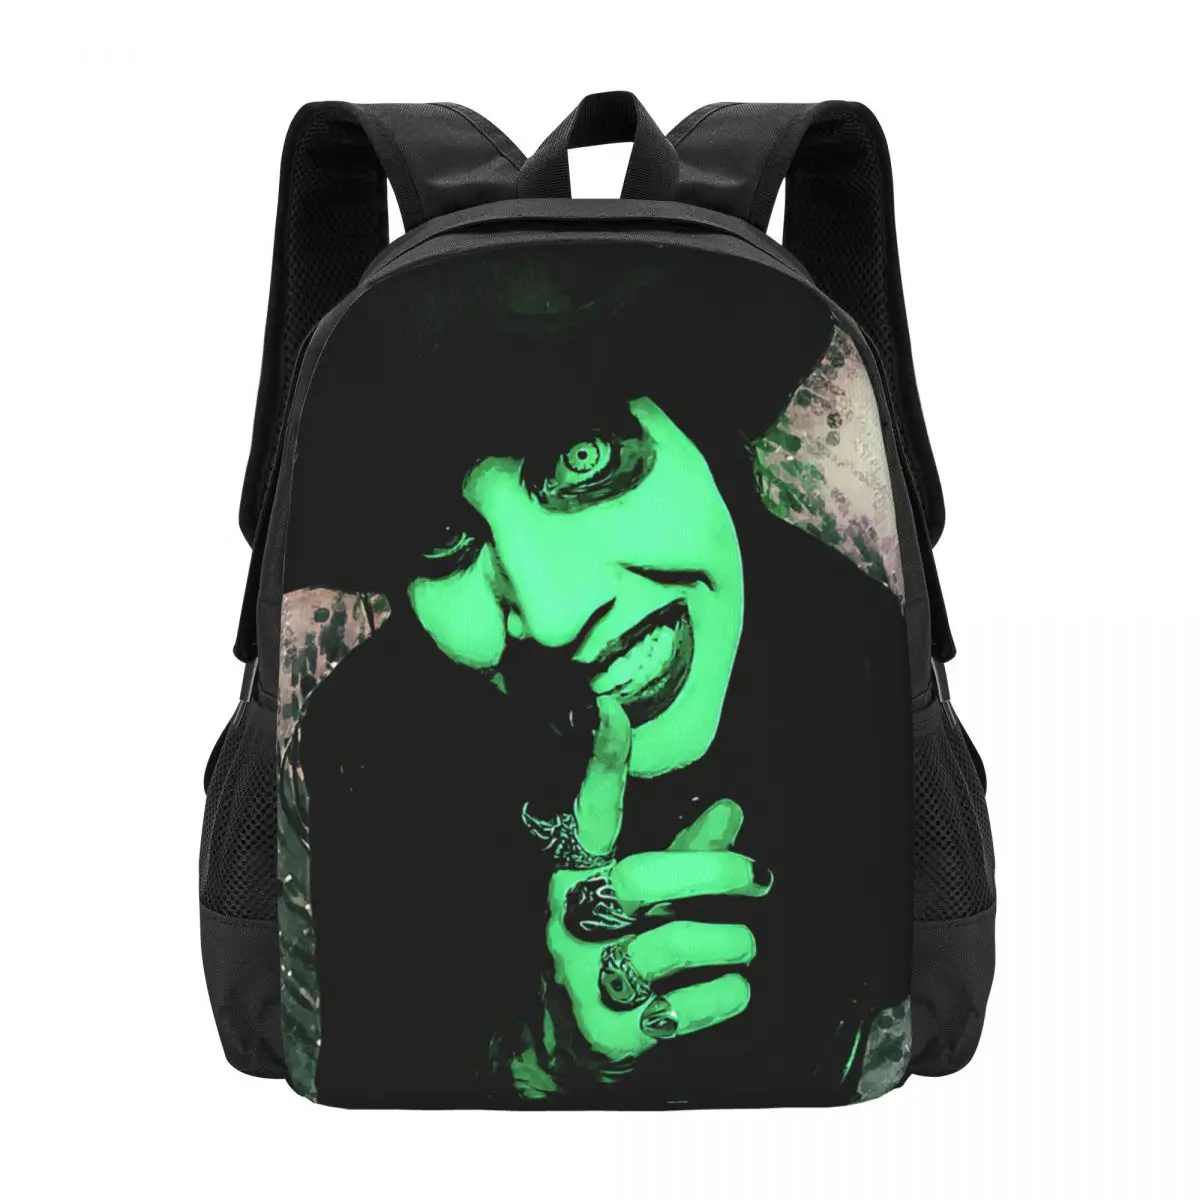 Gothic,Marilyn Manson Backpack for Girls Boys Travel RucksackBackpacks for Teenage school bag